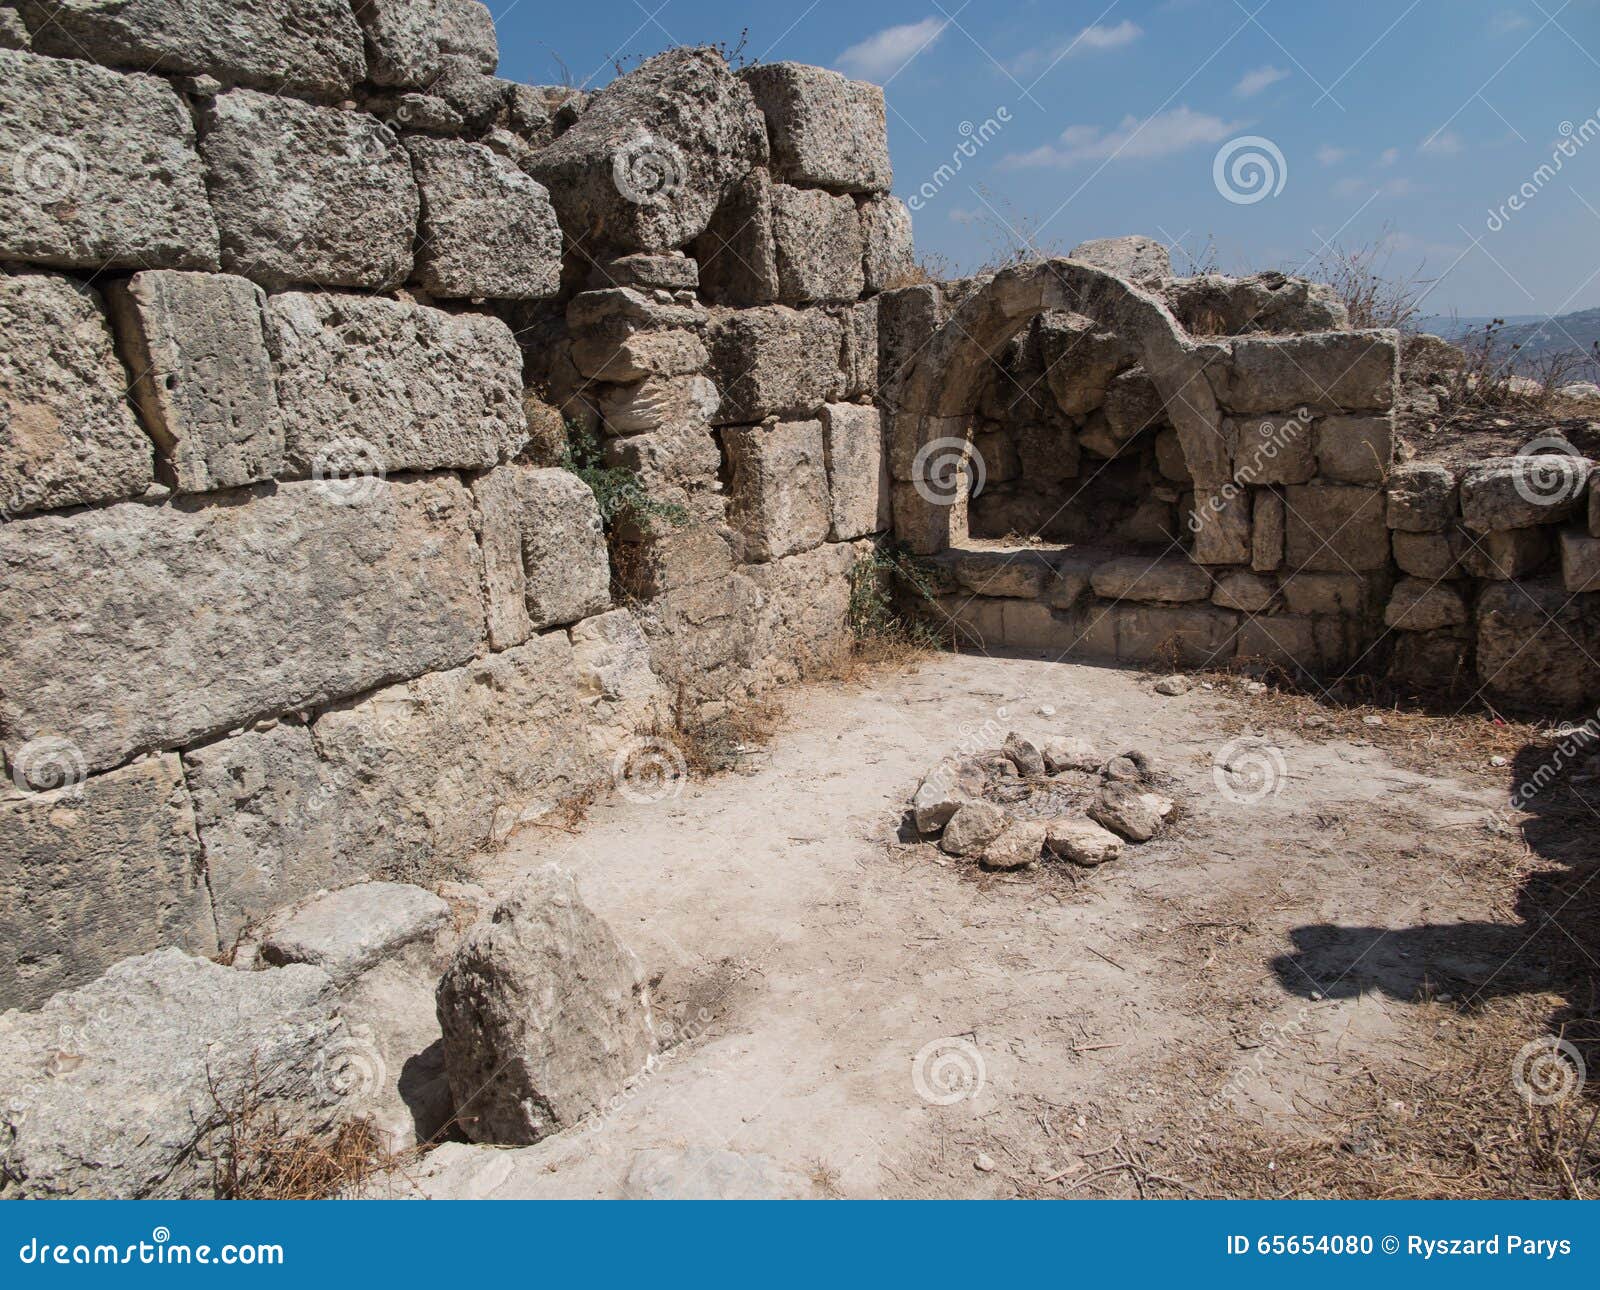 sebastia, ancient israel, ruins and excavations